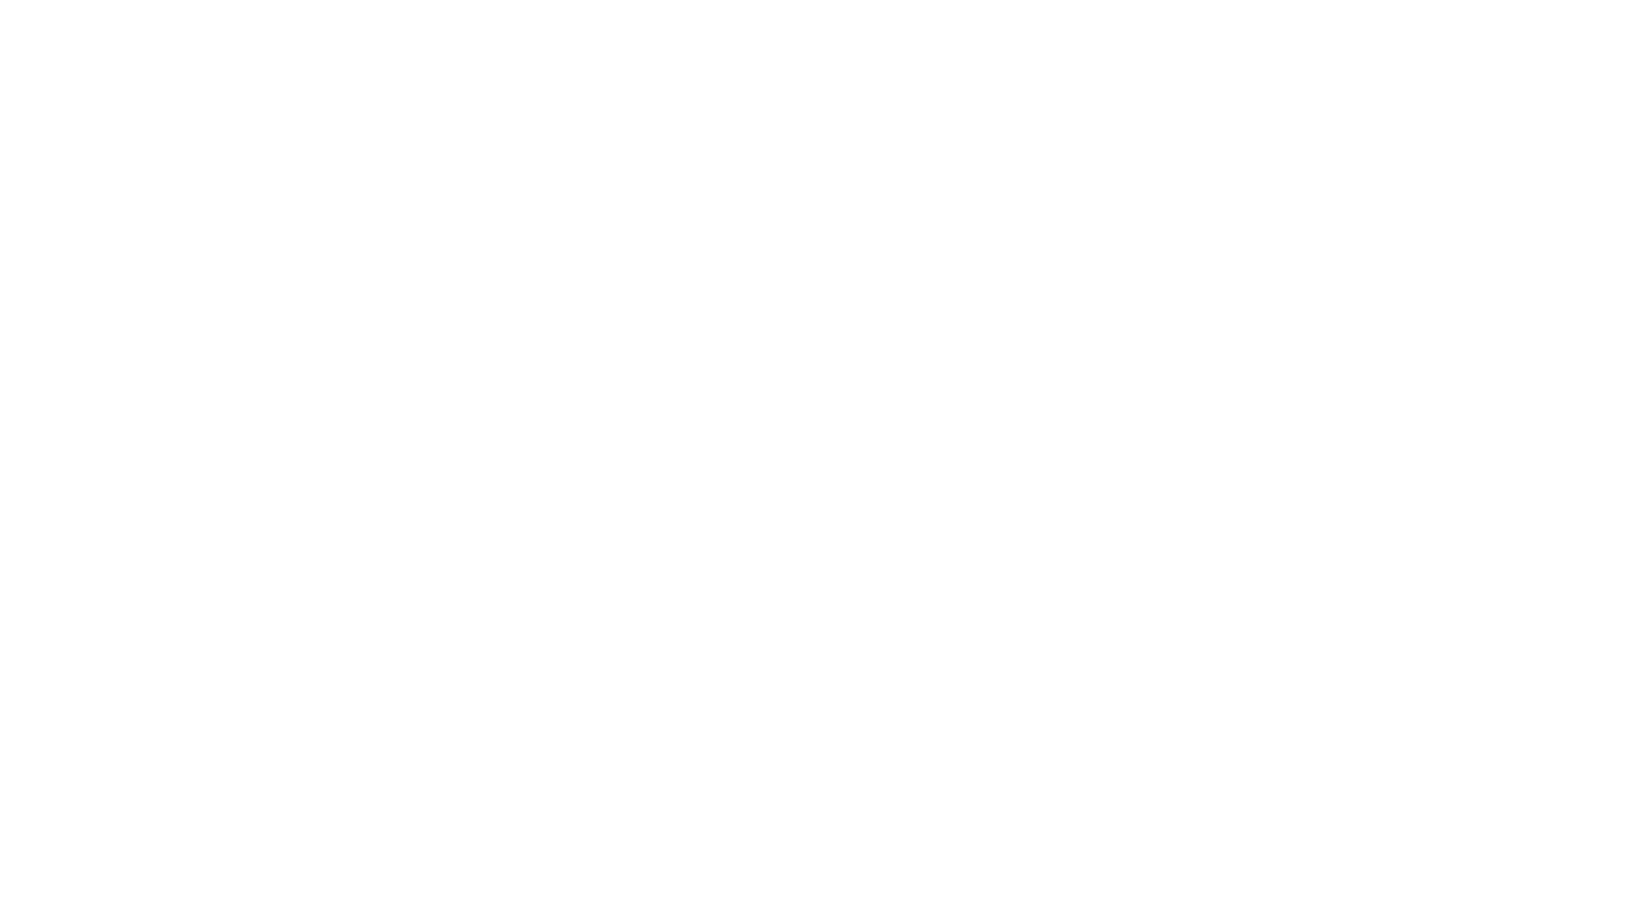 Кейс сервиса BRANDNATION - Фирменный стиль и брендинг жилого комплекса. Брендинговое агентство BRANDNATION в Москве и Санкт-Петербурге. Услуги: разработка логотипа и фирменного стиля, дизайн упаковки, брендбук, ребрендинг, разработка сайта.